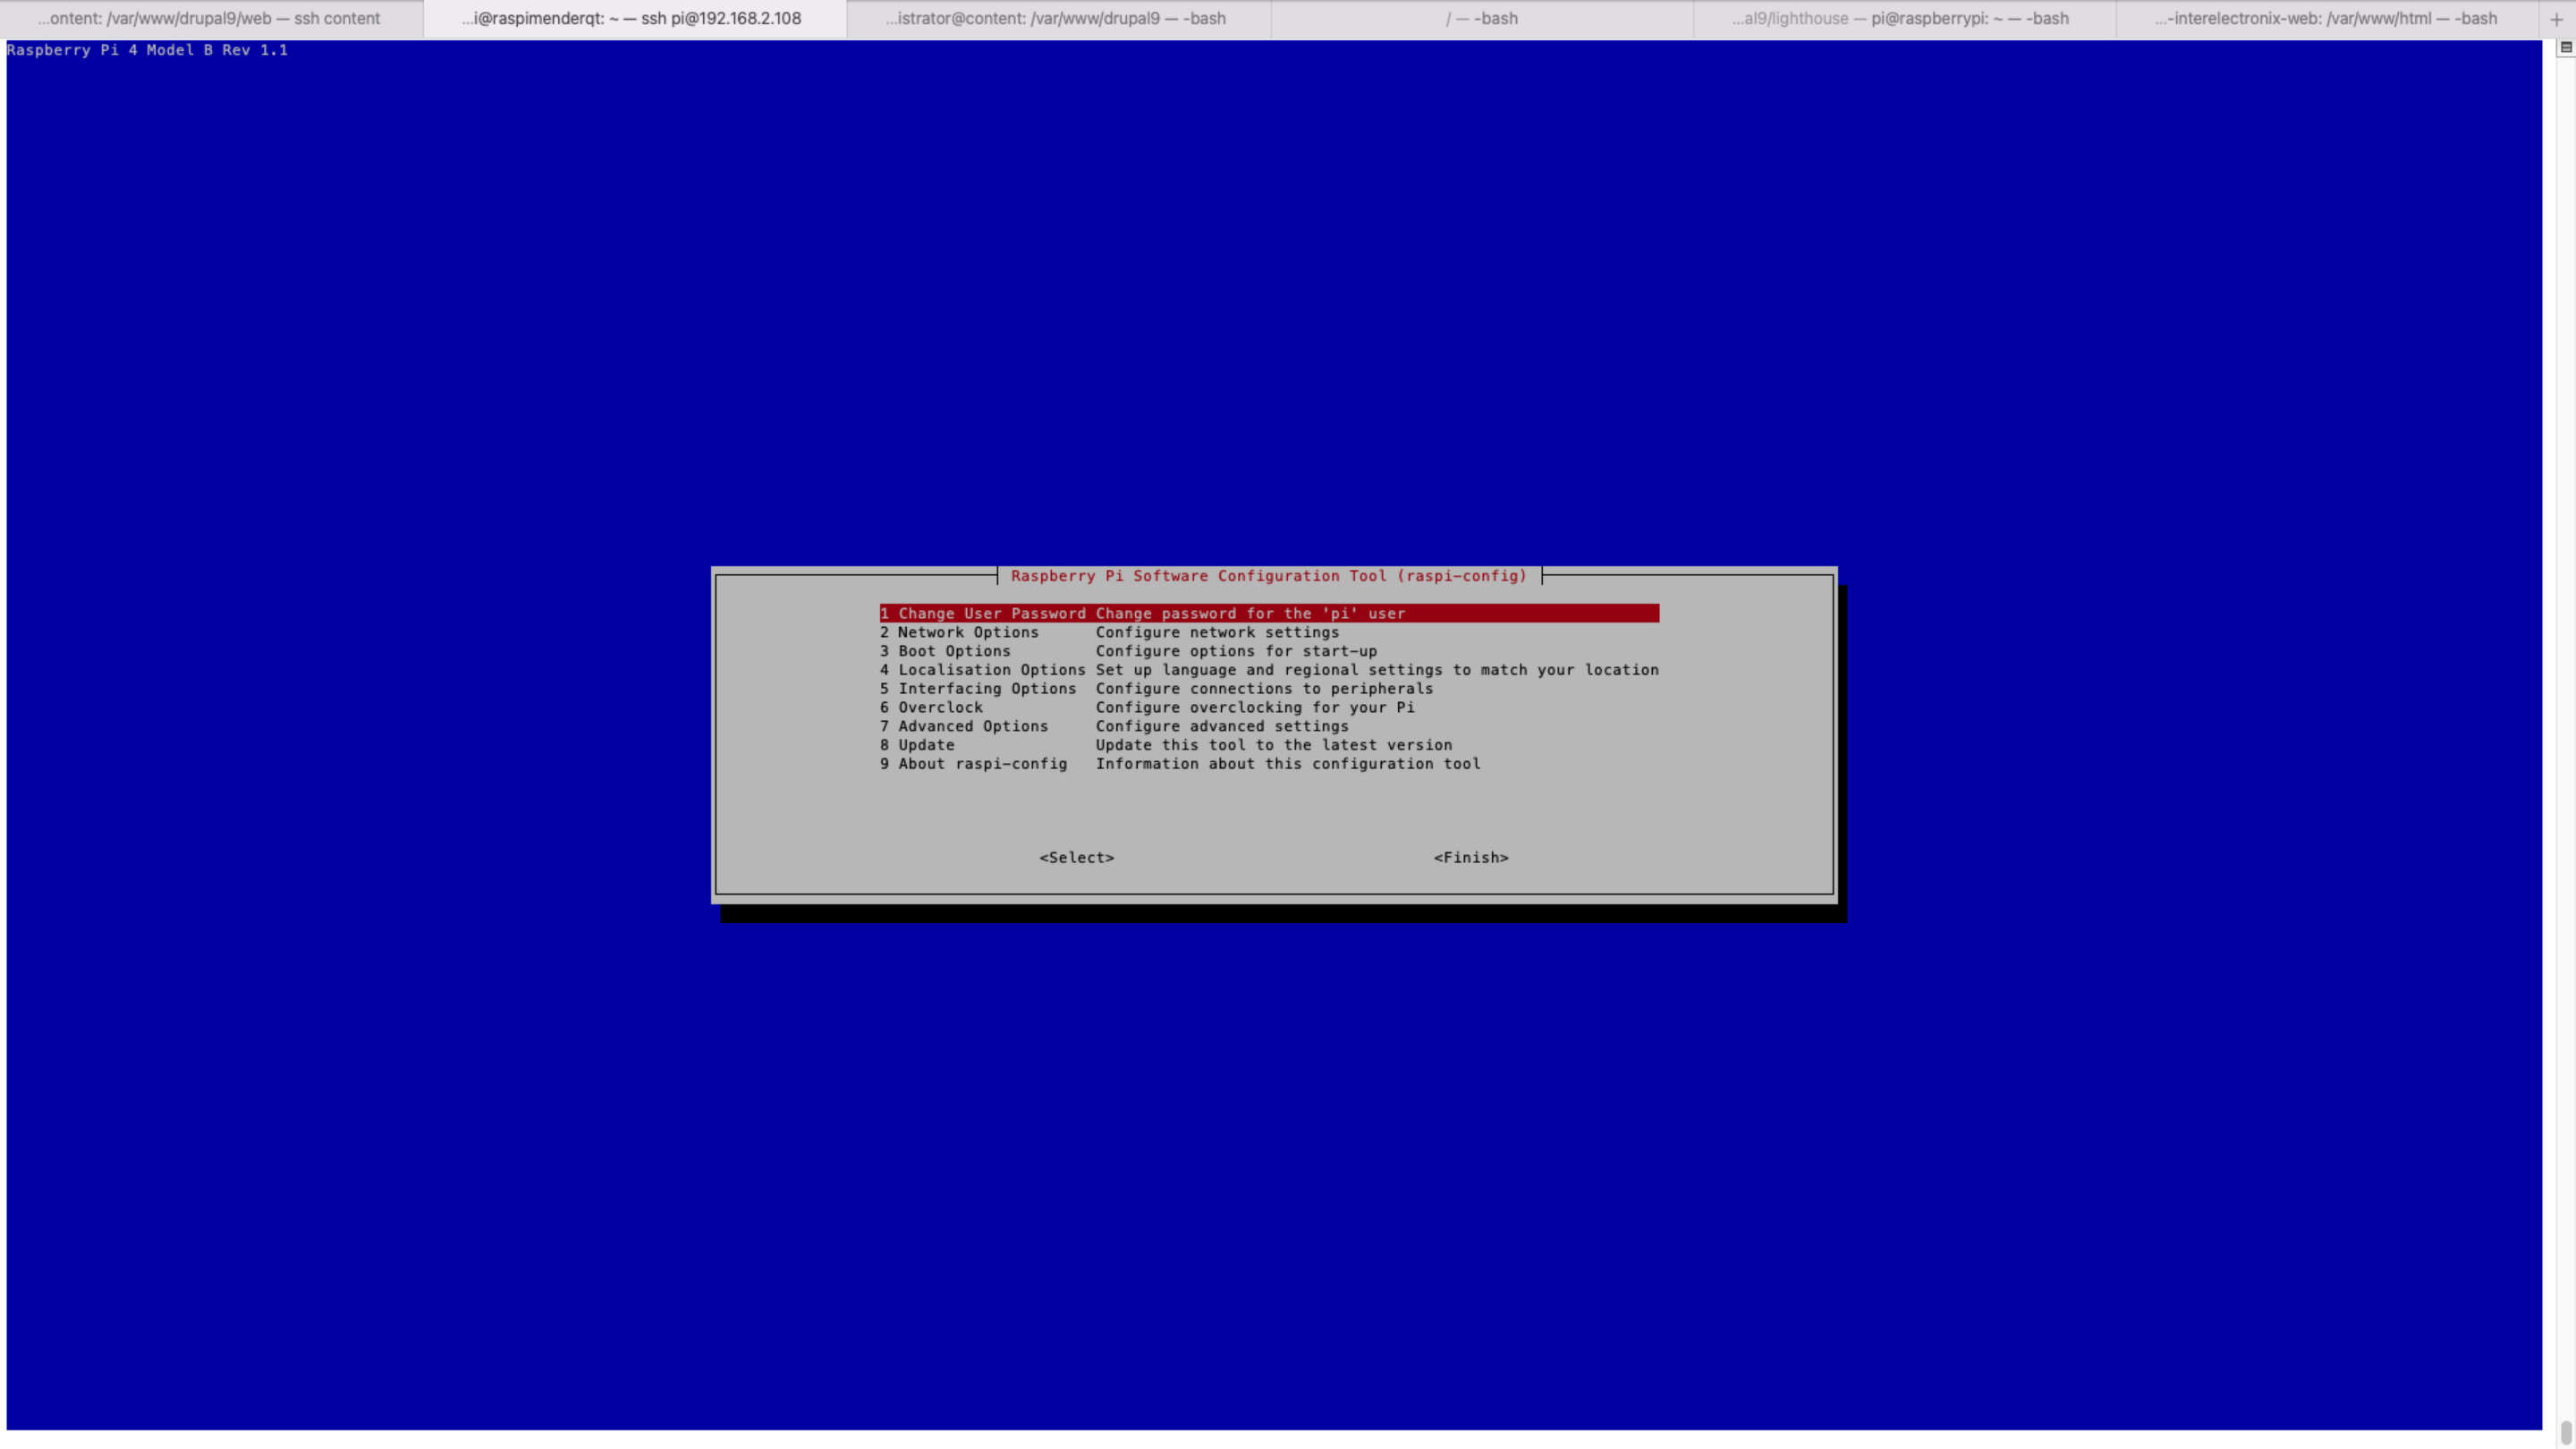 Phần mềm nhúng - Qt trên Raspberry Pi 4 ảnh chụp màn hình máy tính của màn hình xanh